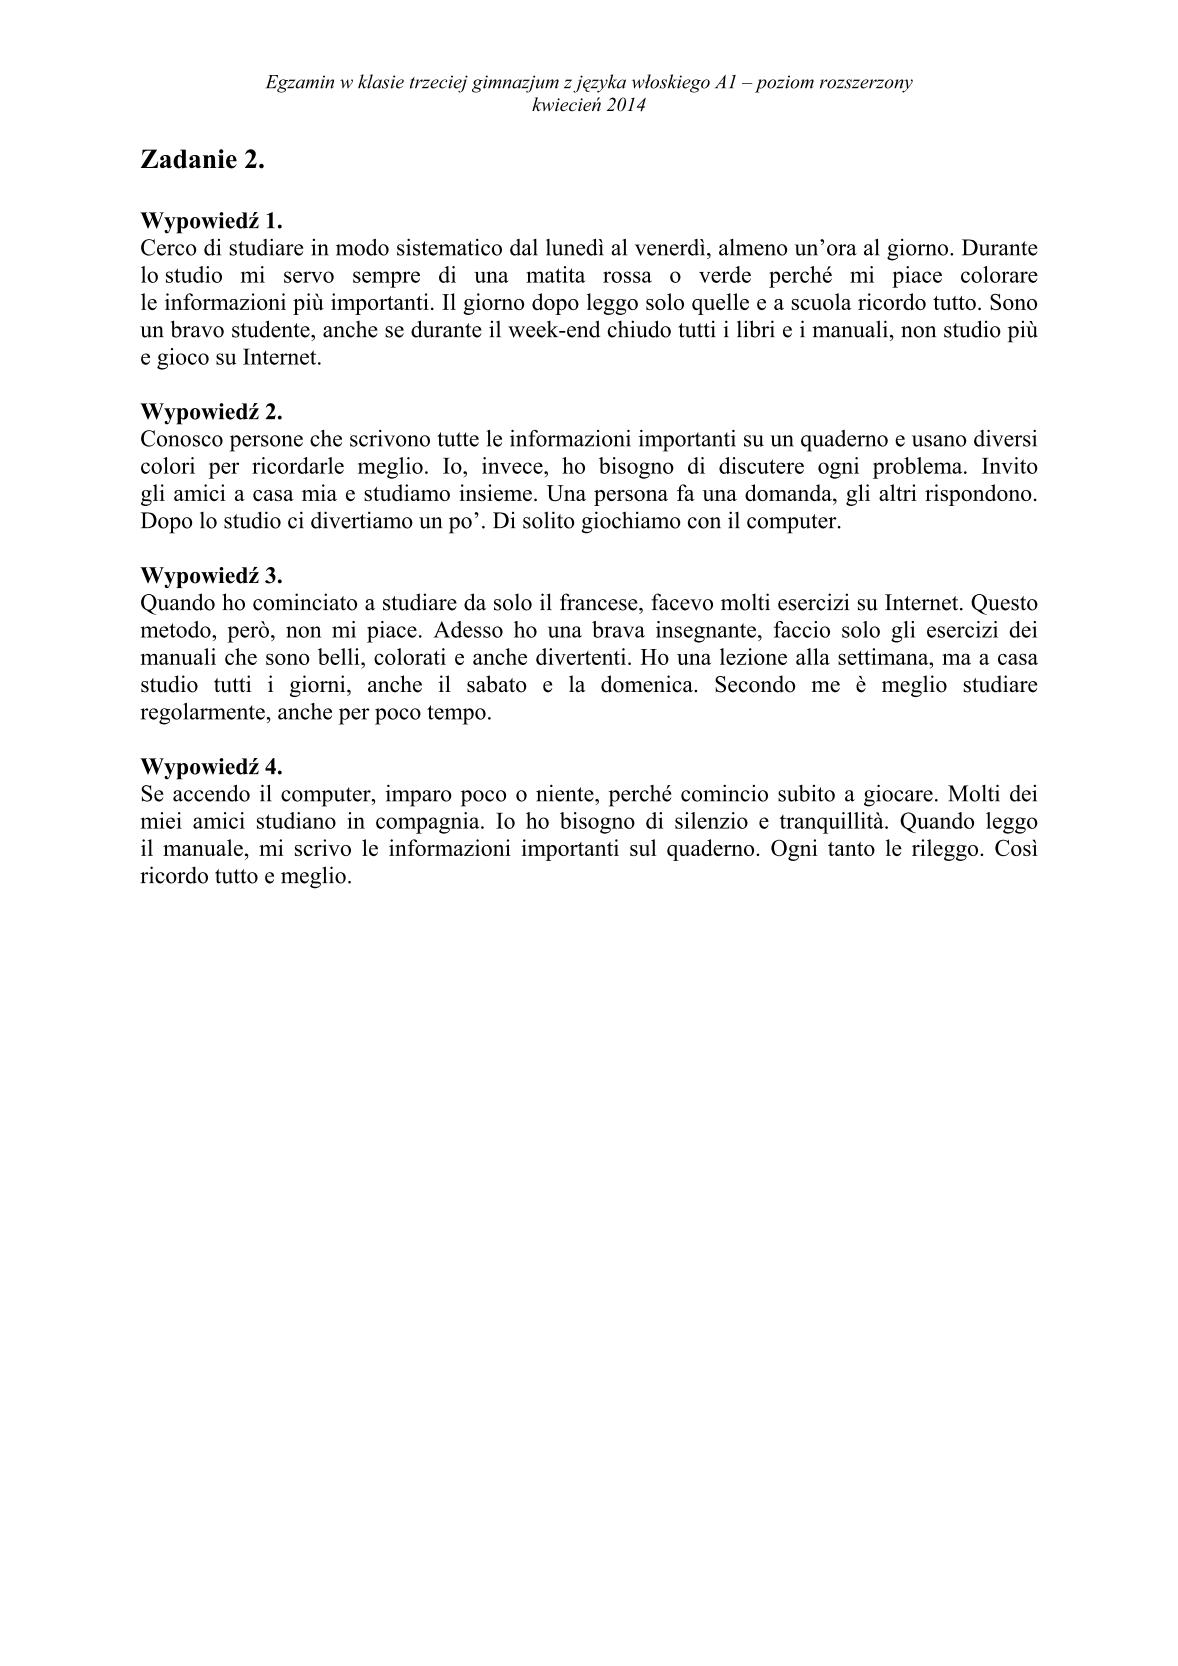 transkrypcja-wloski-poziom-rozszerzony-egzamin-gimnazjalny-25.04.2014-2